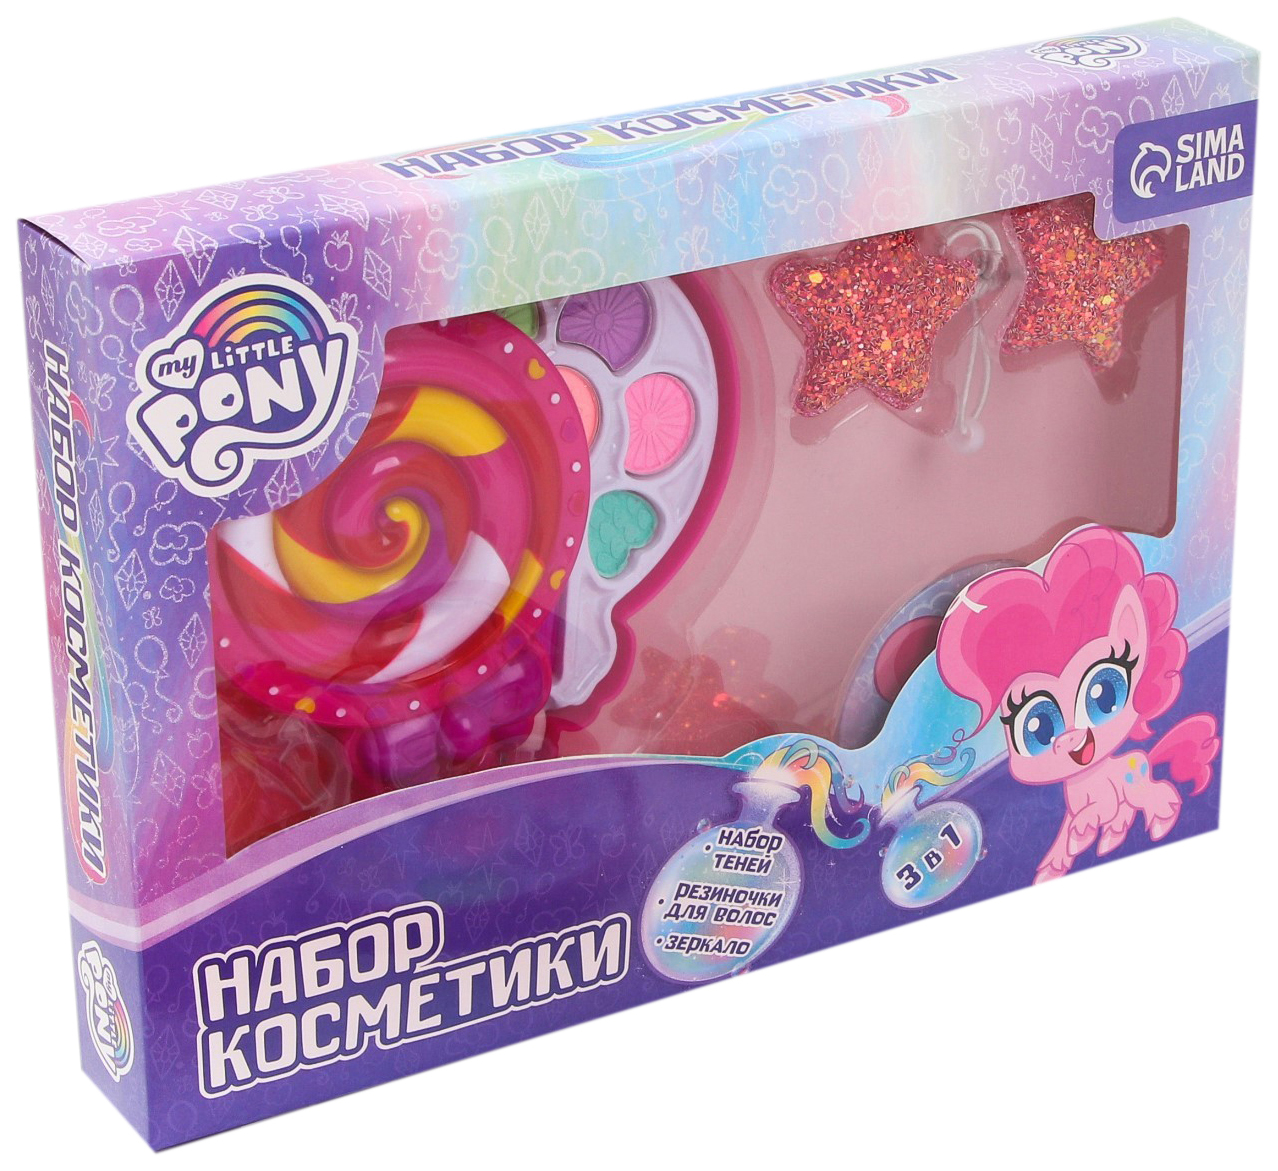 Набор детской косметики и аксессуаров Hasbro Пинки Пай 3 в 1 My Little Pony